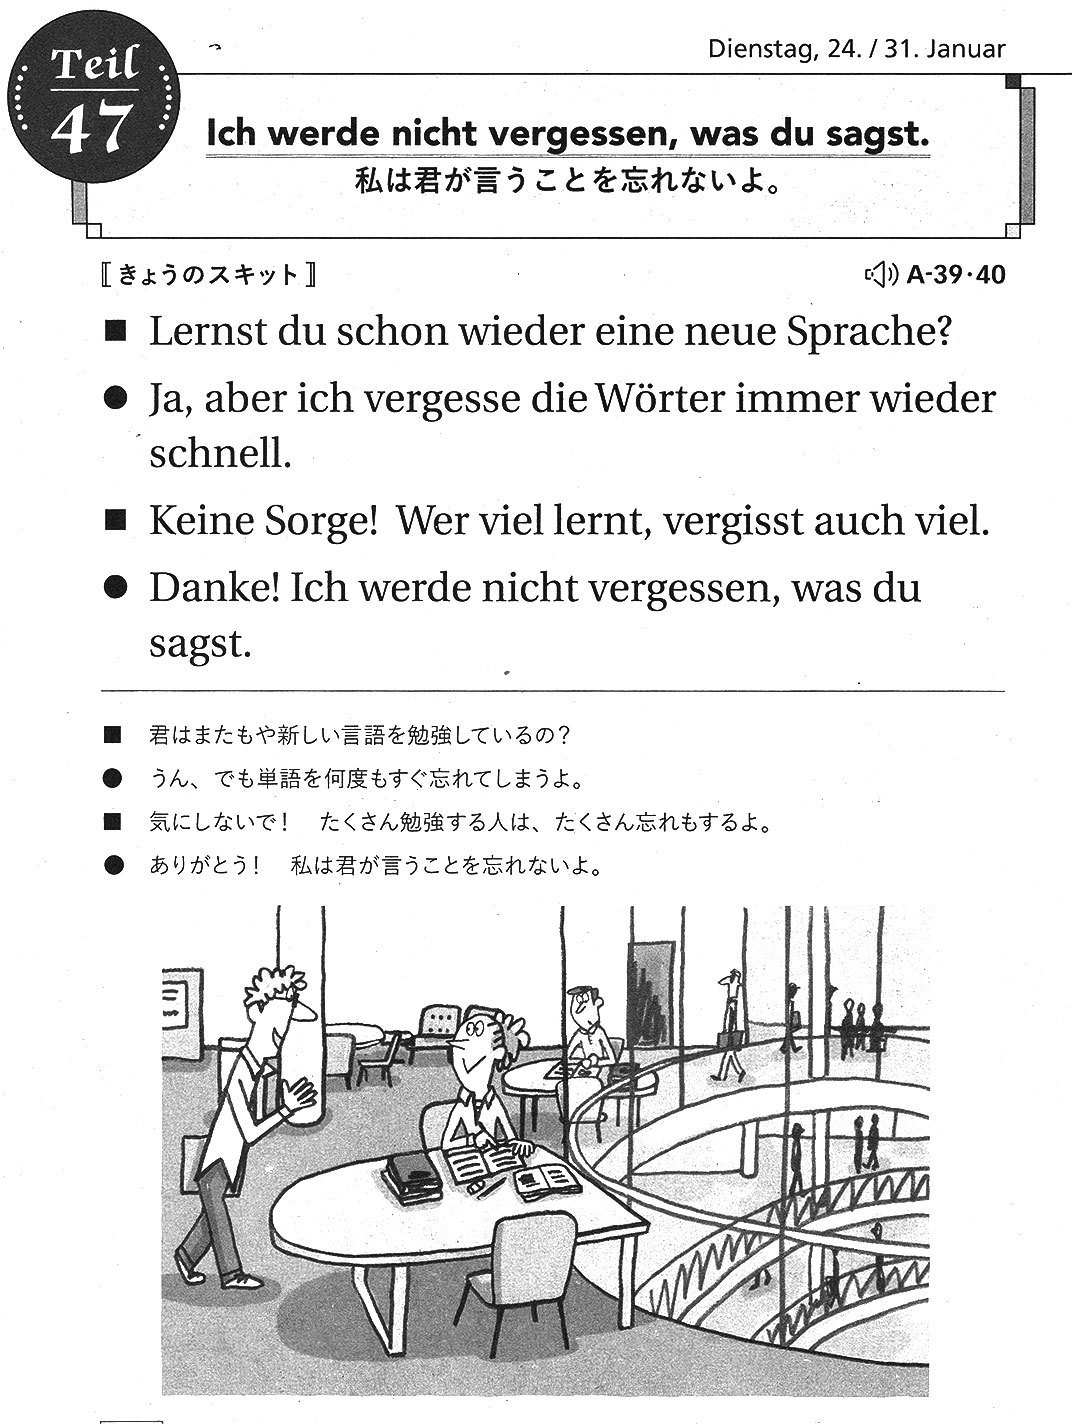 ドイツ語 Journal